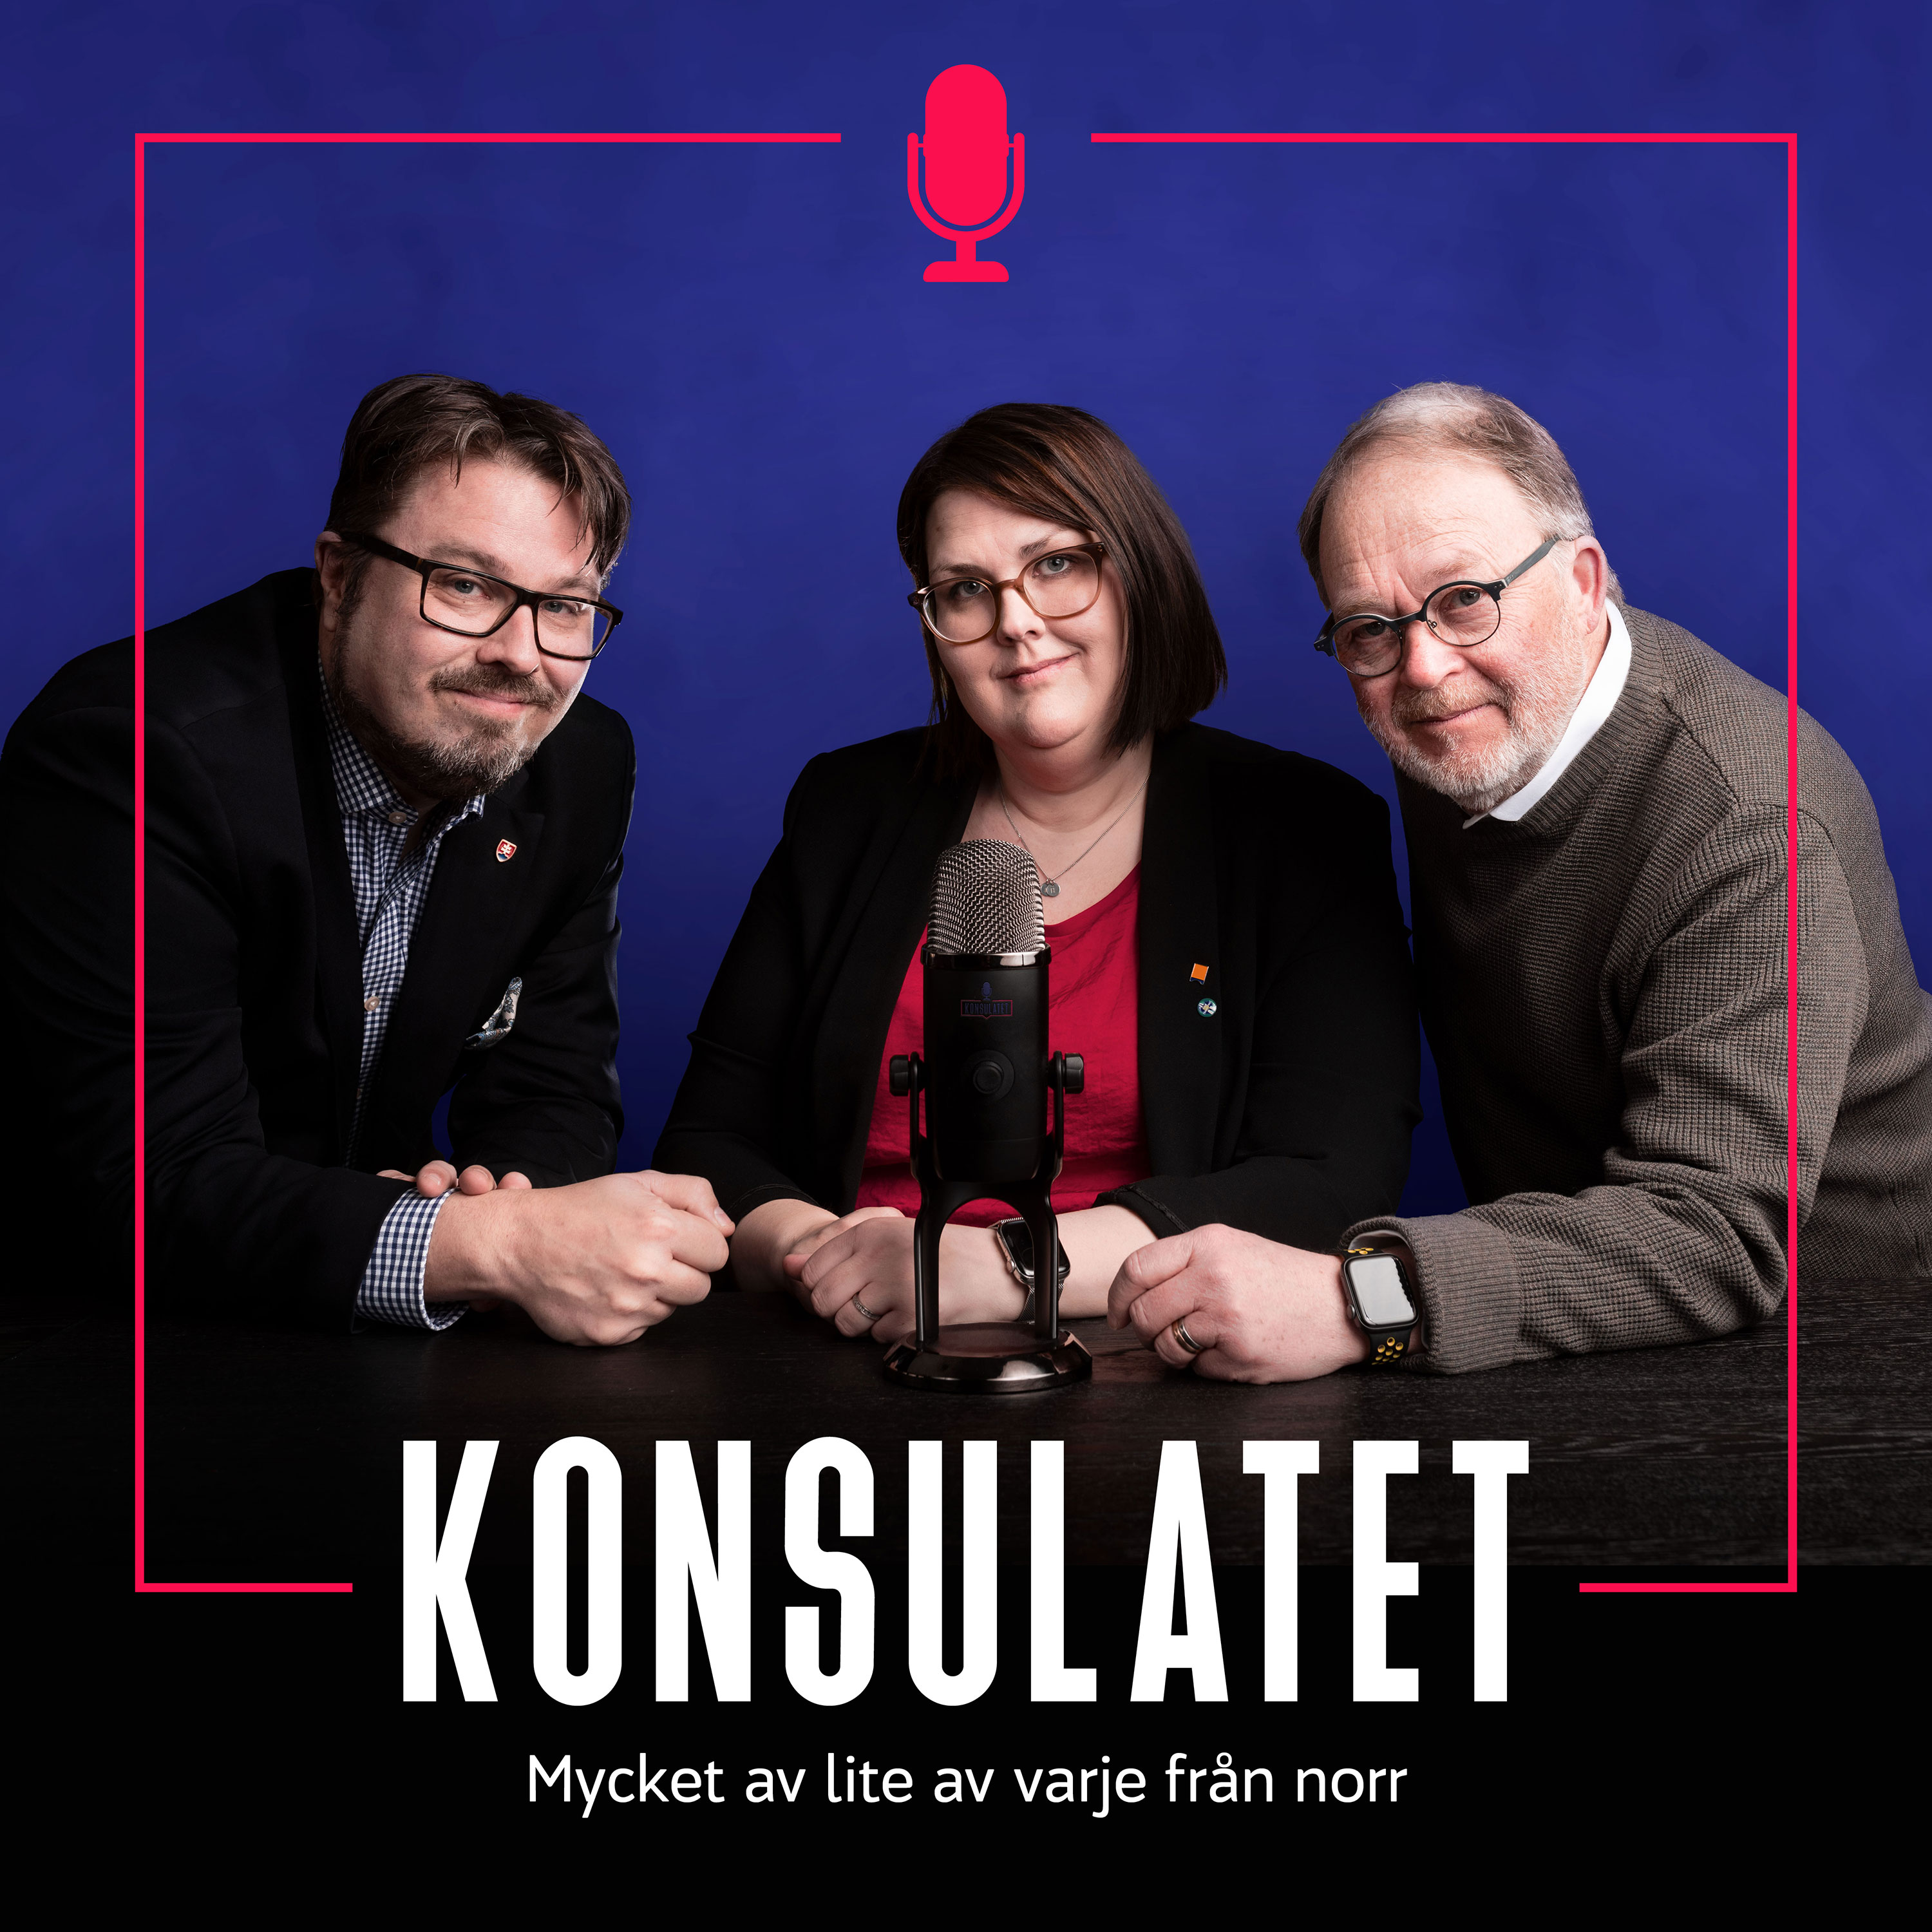 A highlight from Gst hos Konsulatet: Torsten hlander